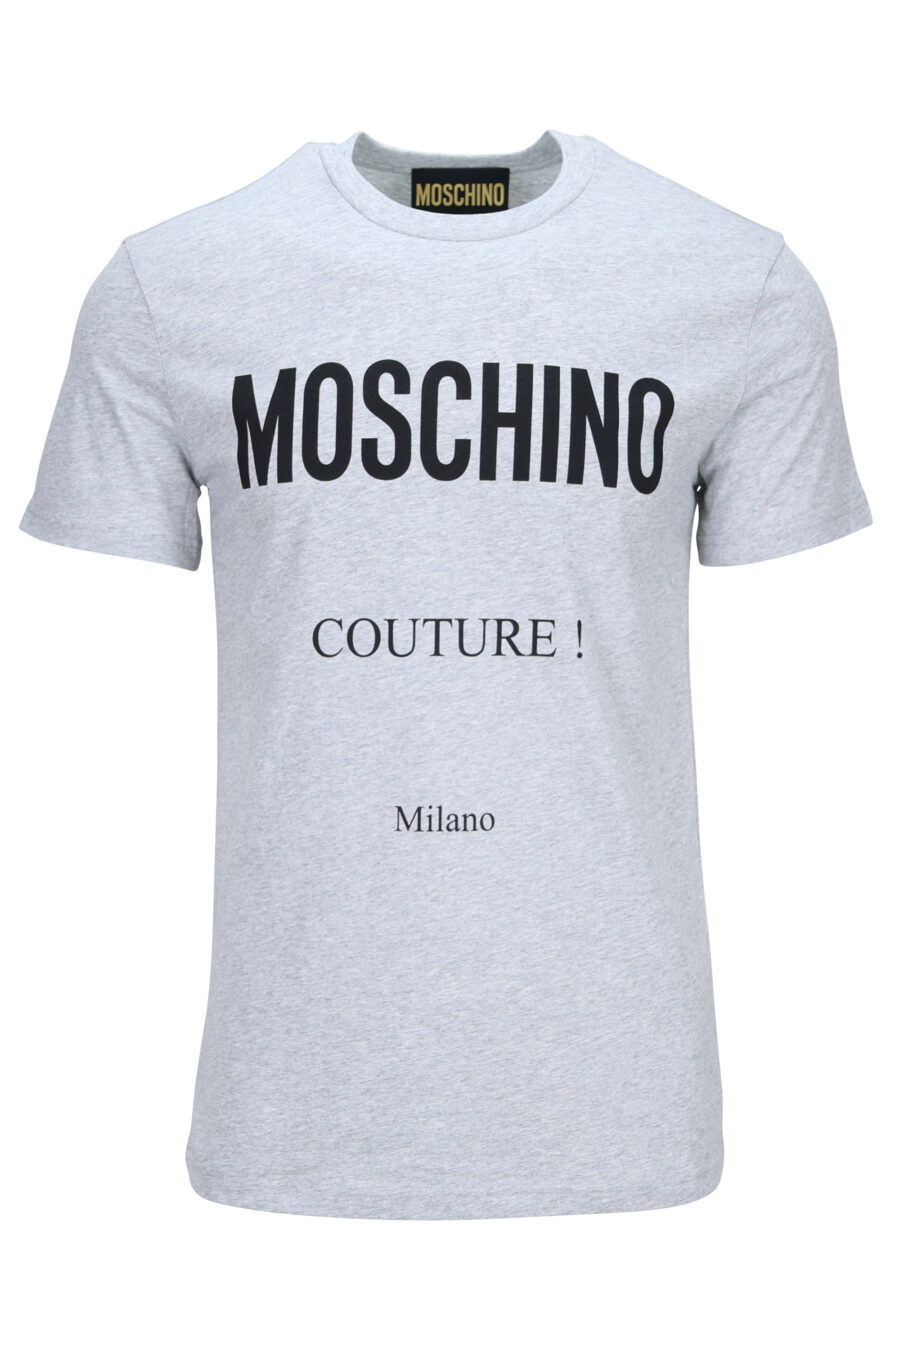 T-shirt cinzenta com maxilogue "couture milano" - 889316936414